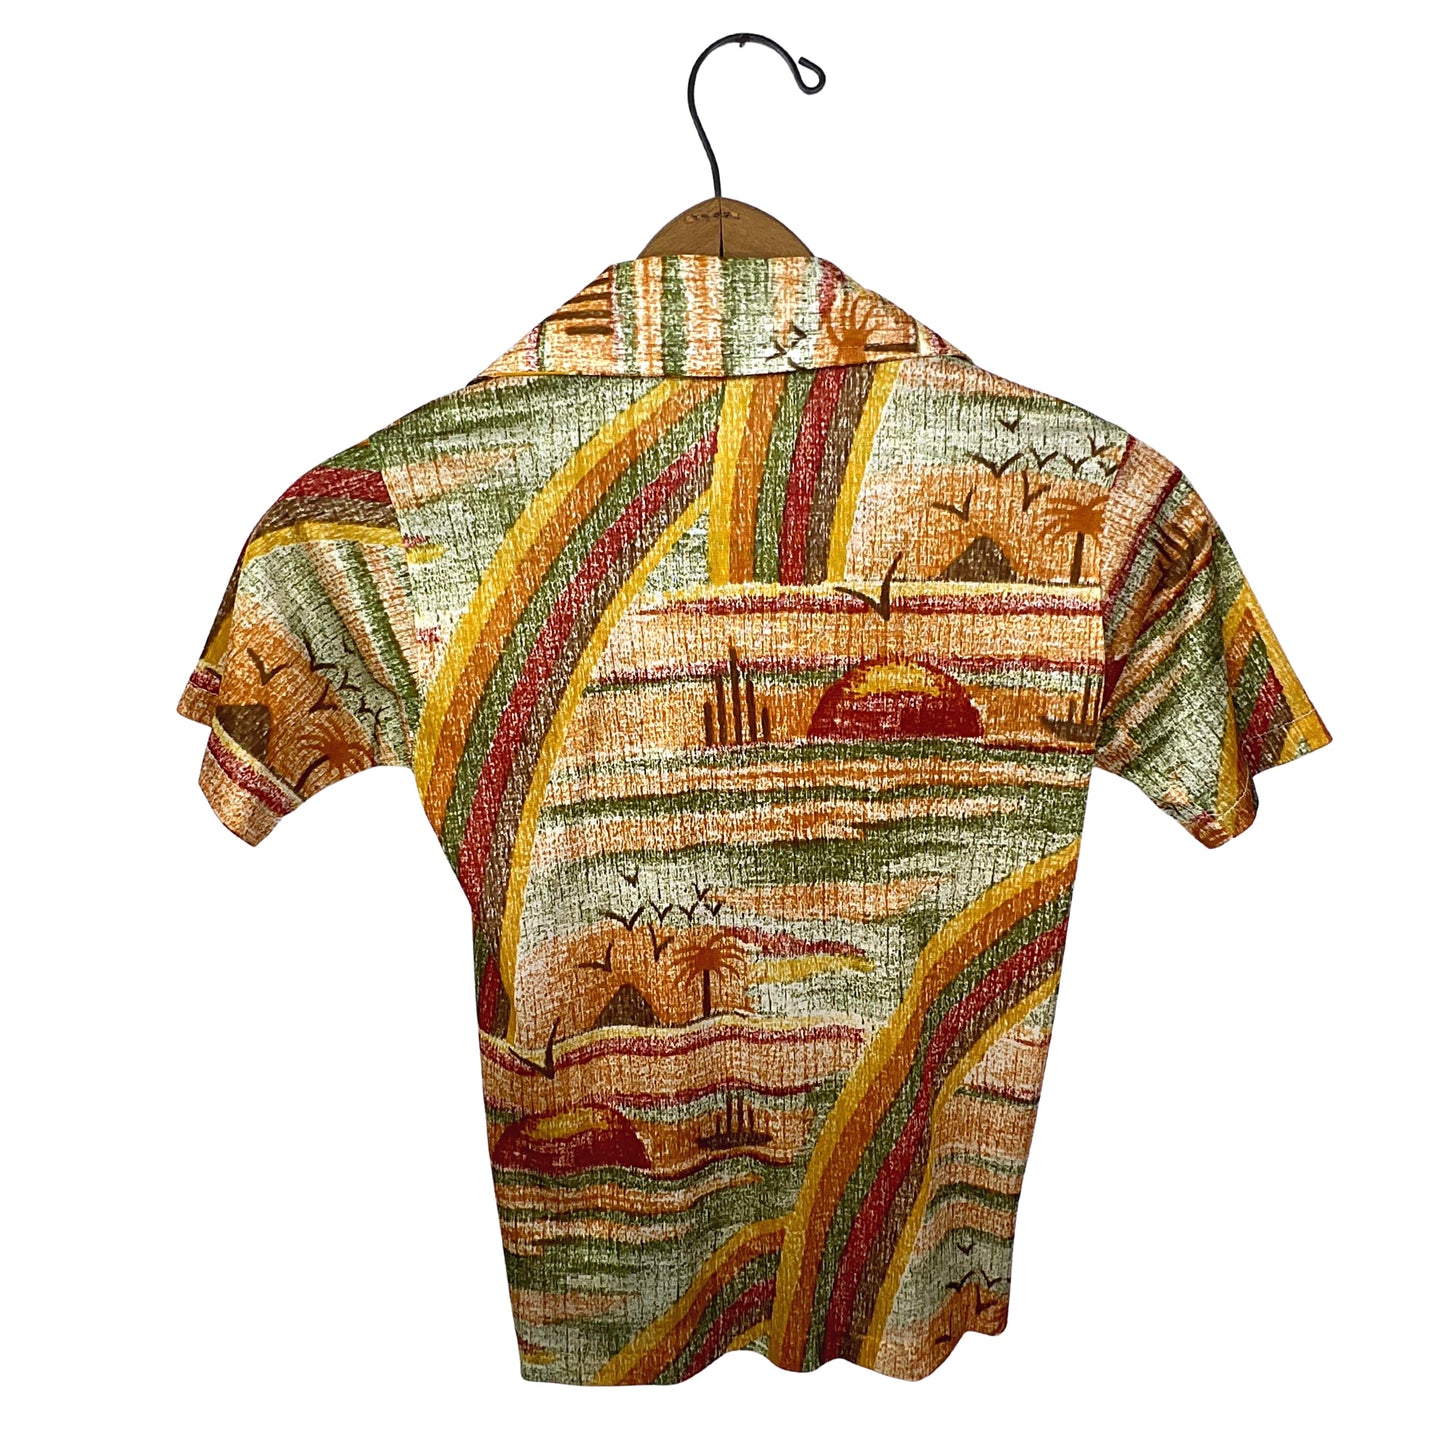 70’s JcPenney Sunset Beach Disco Shirt Kids Size (6)